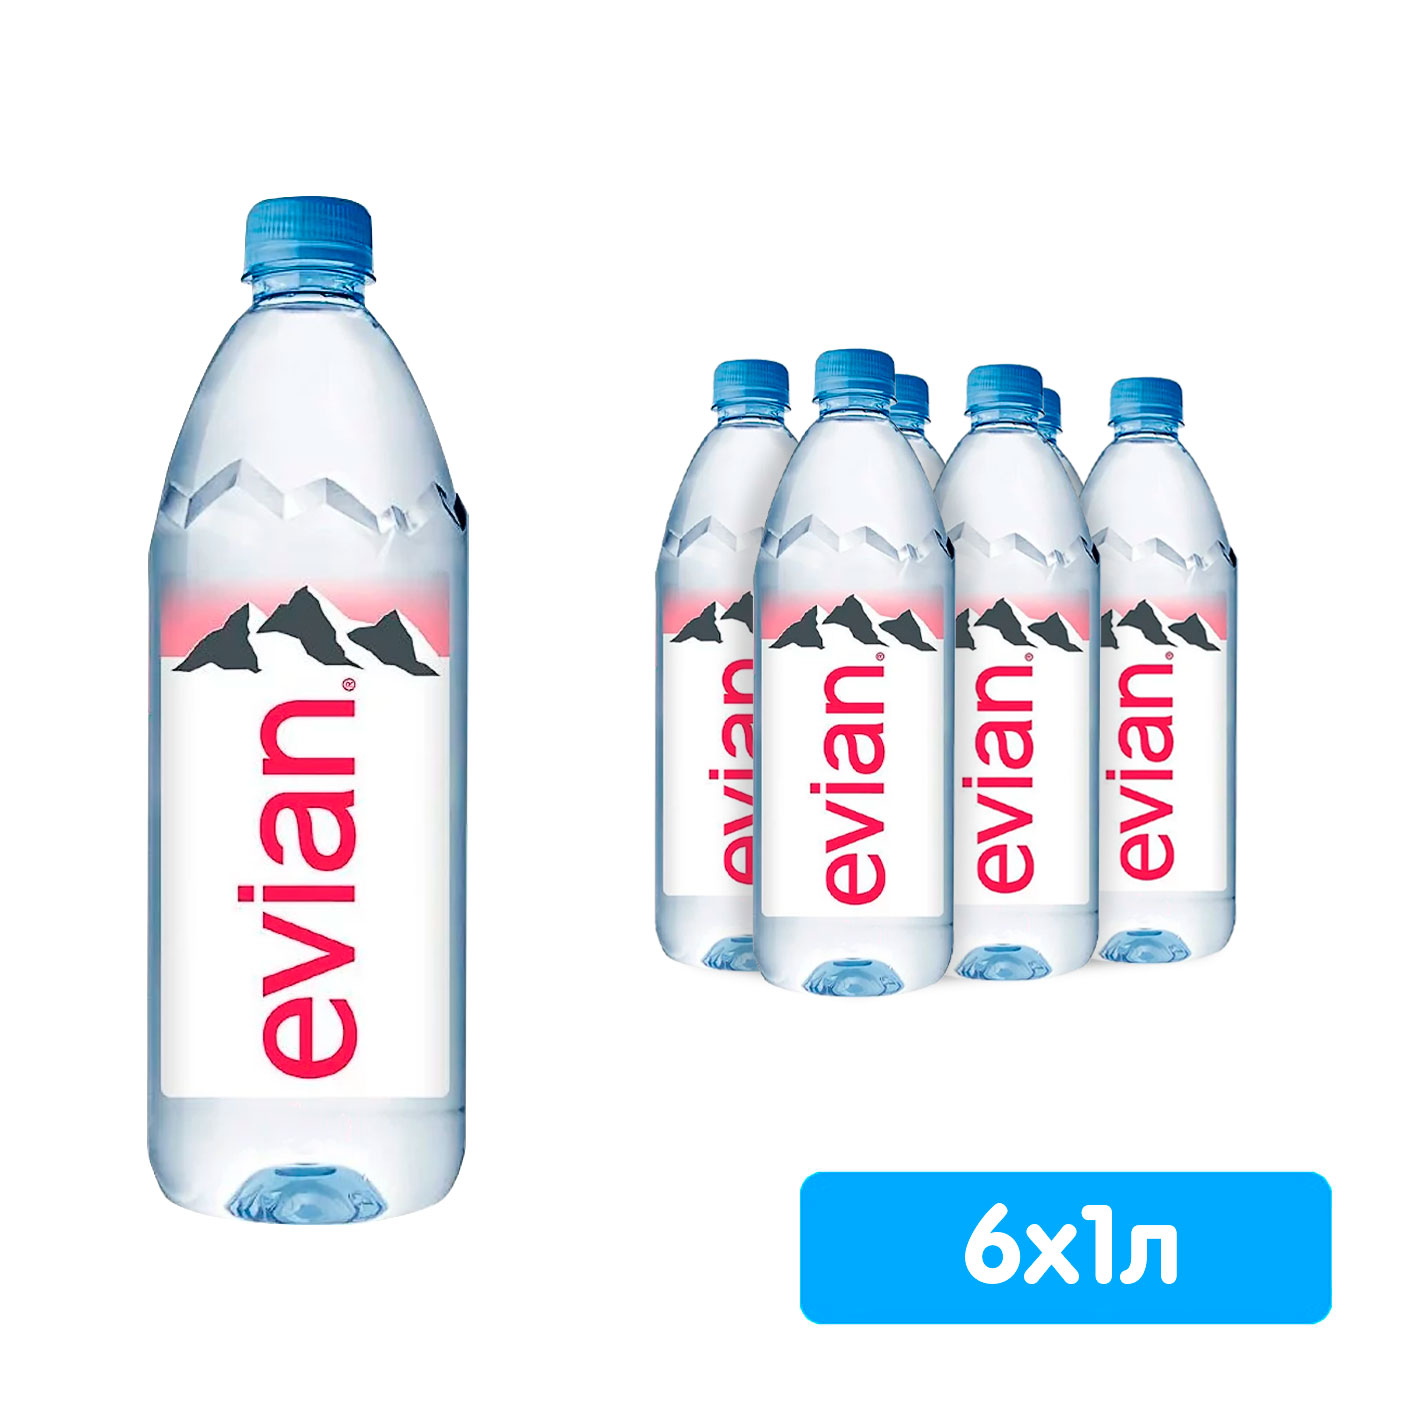  Evian 1 ,  , , 6 .  